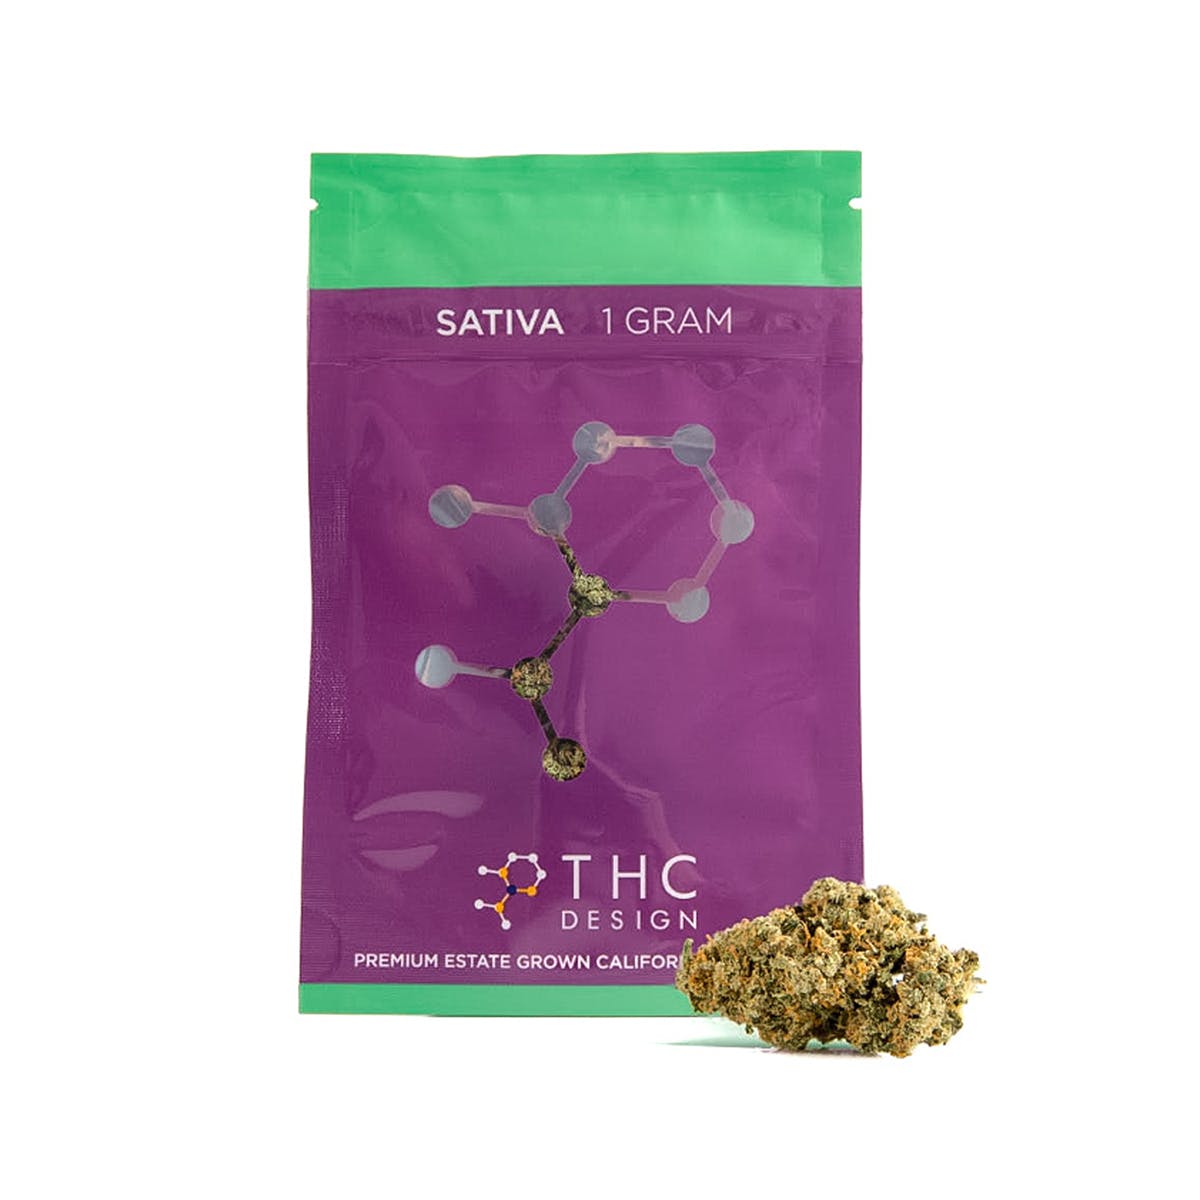 THC Design Premium Single Gram Pouches - Sativa